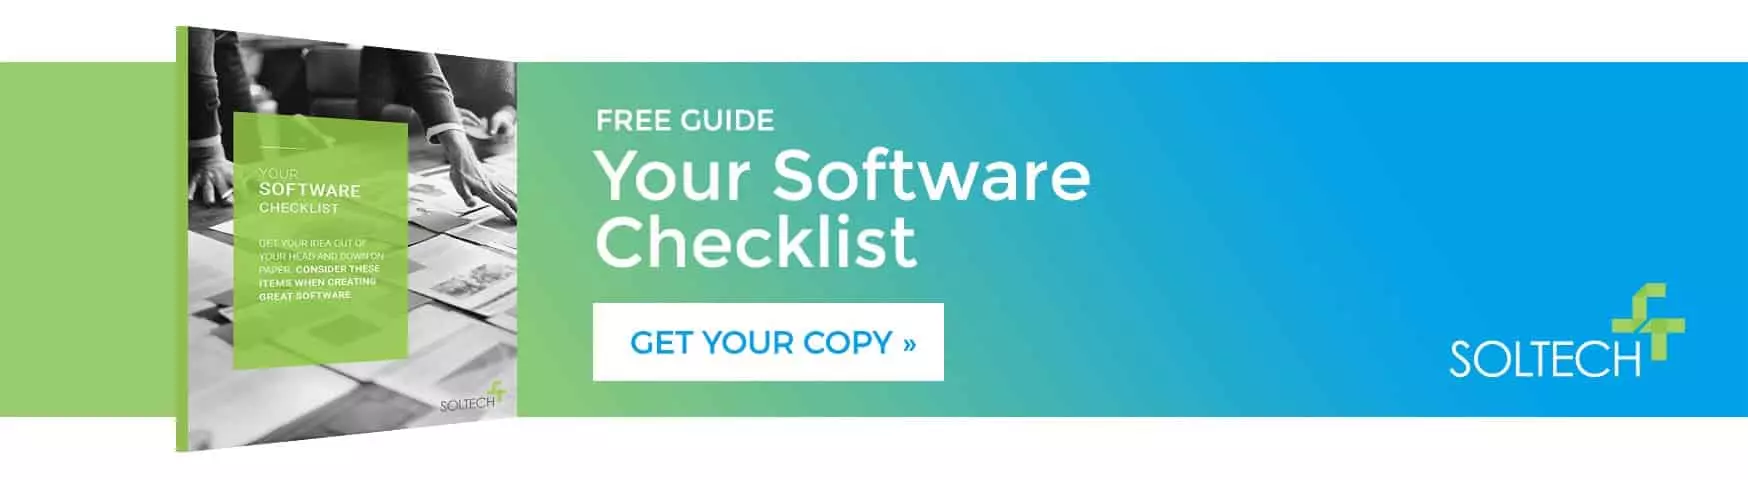 software checklist